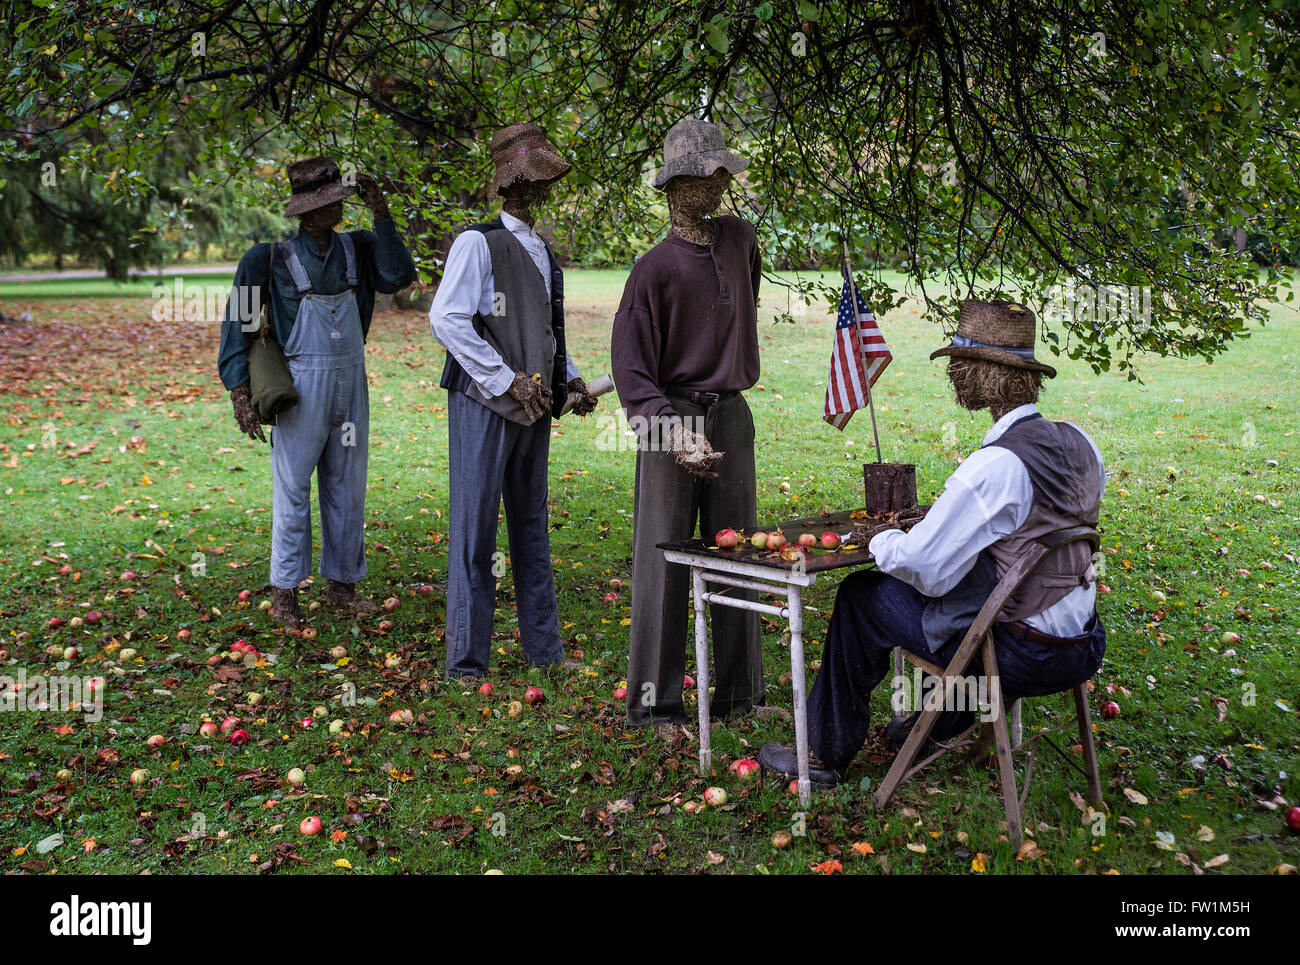 El hombre de paja y de recreación de los esfuerzos de reclutamiento del ejército para reclutar hombres negros tras la Proclamación de Emancipación de Lincoln. Foto de stock